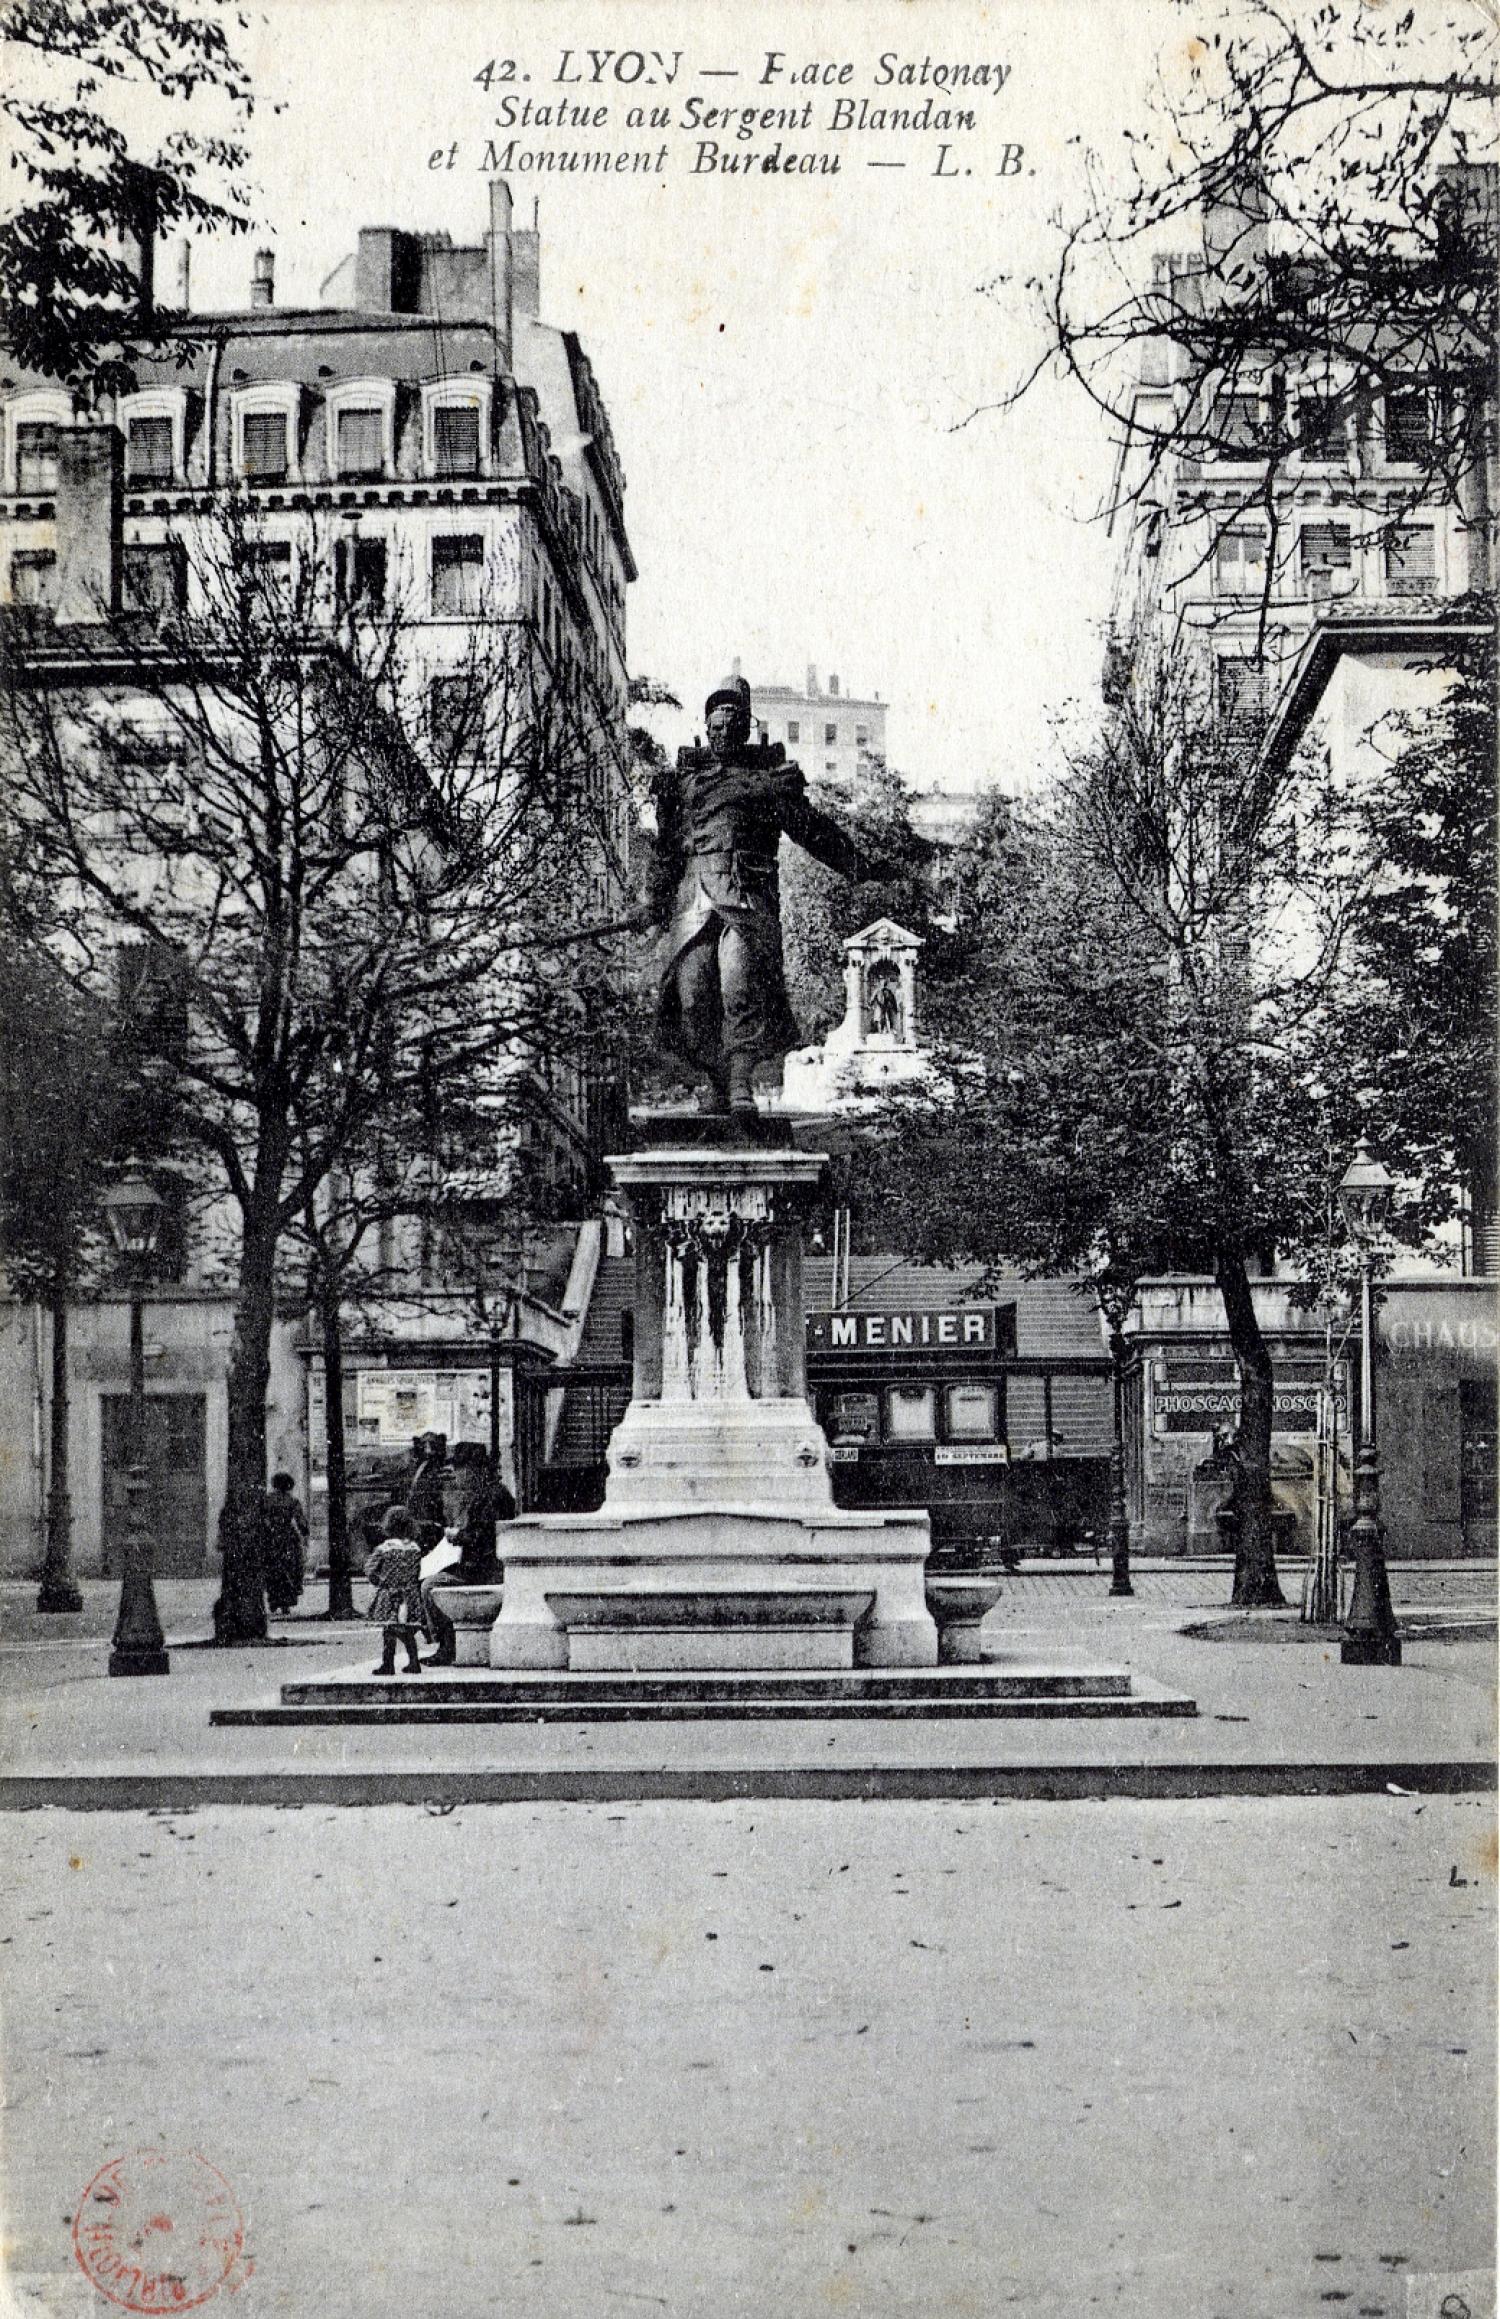 Lyon. - Place Sathonay. - Statue au Sergent Blandan et Monument Burdeau L. B.